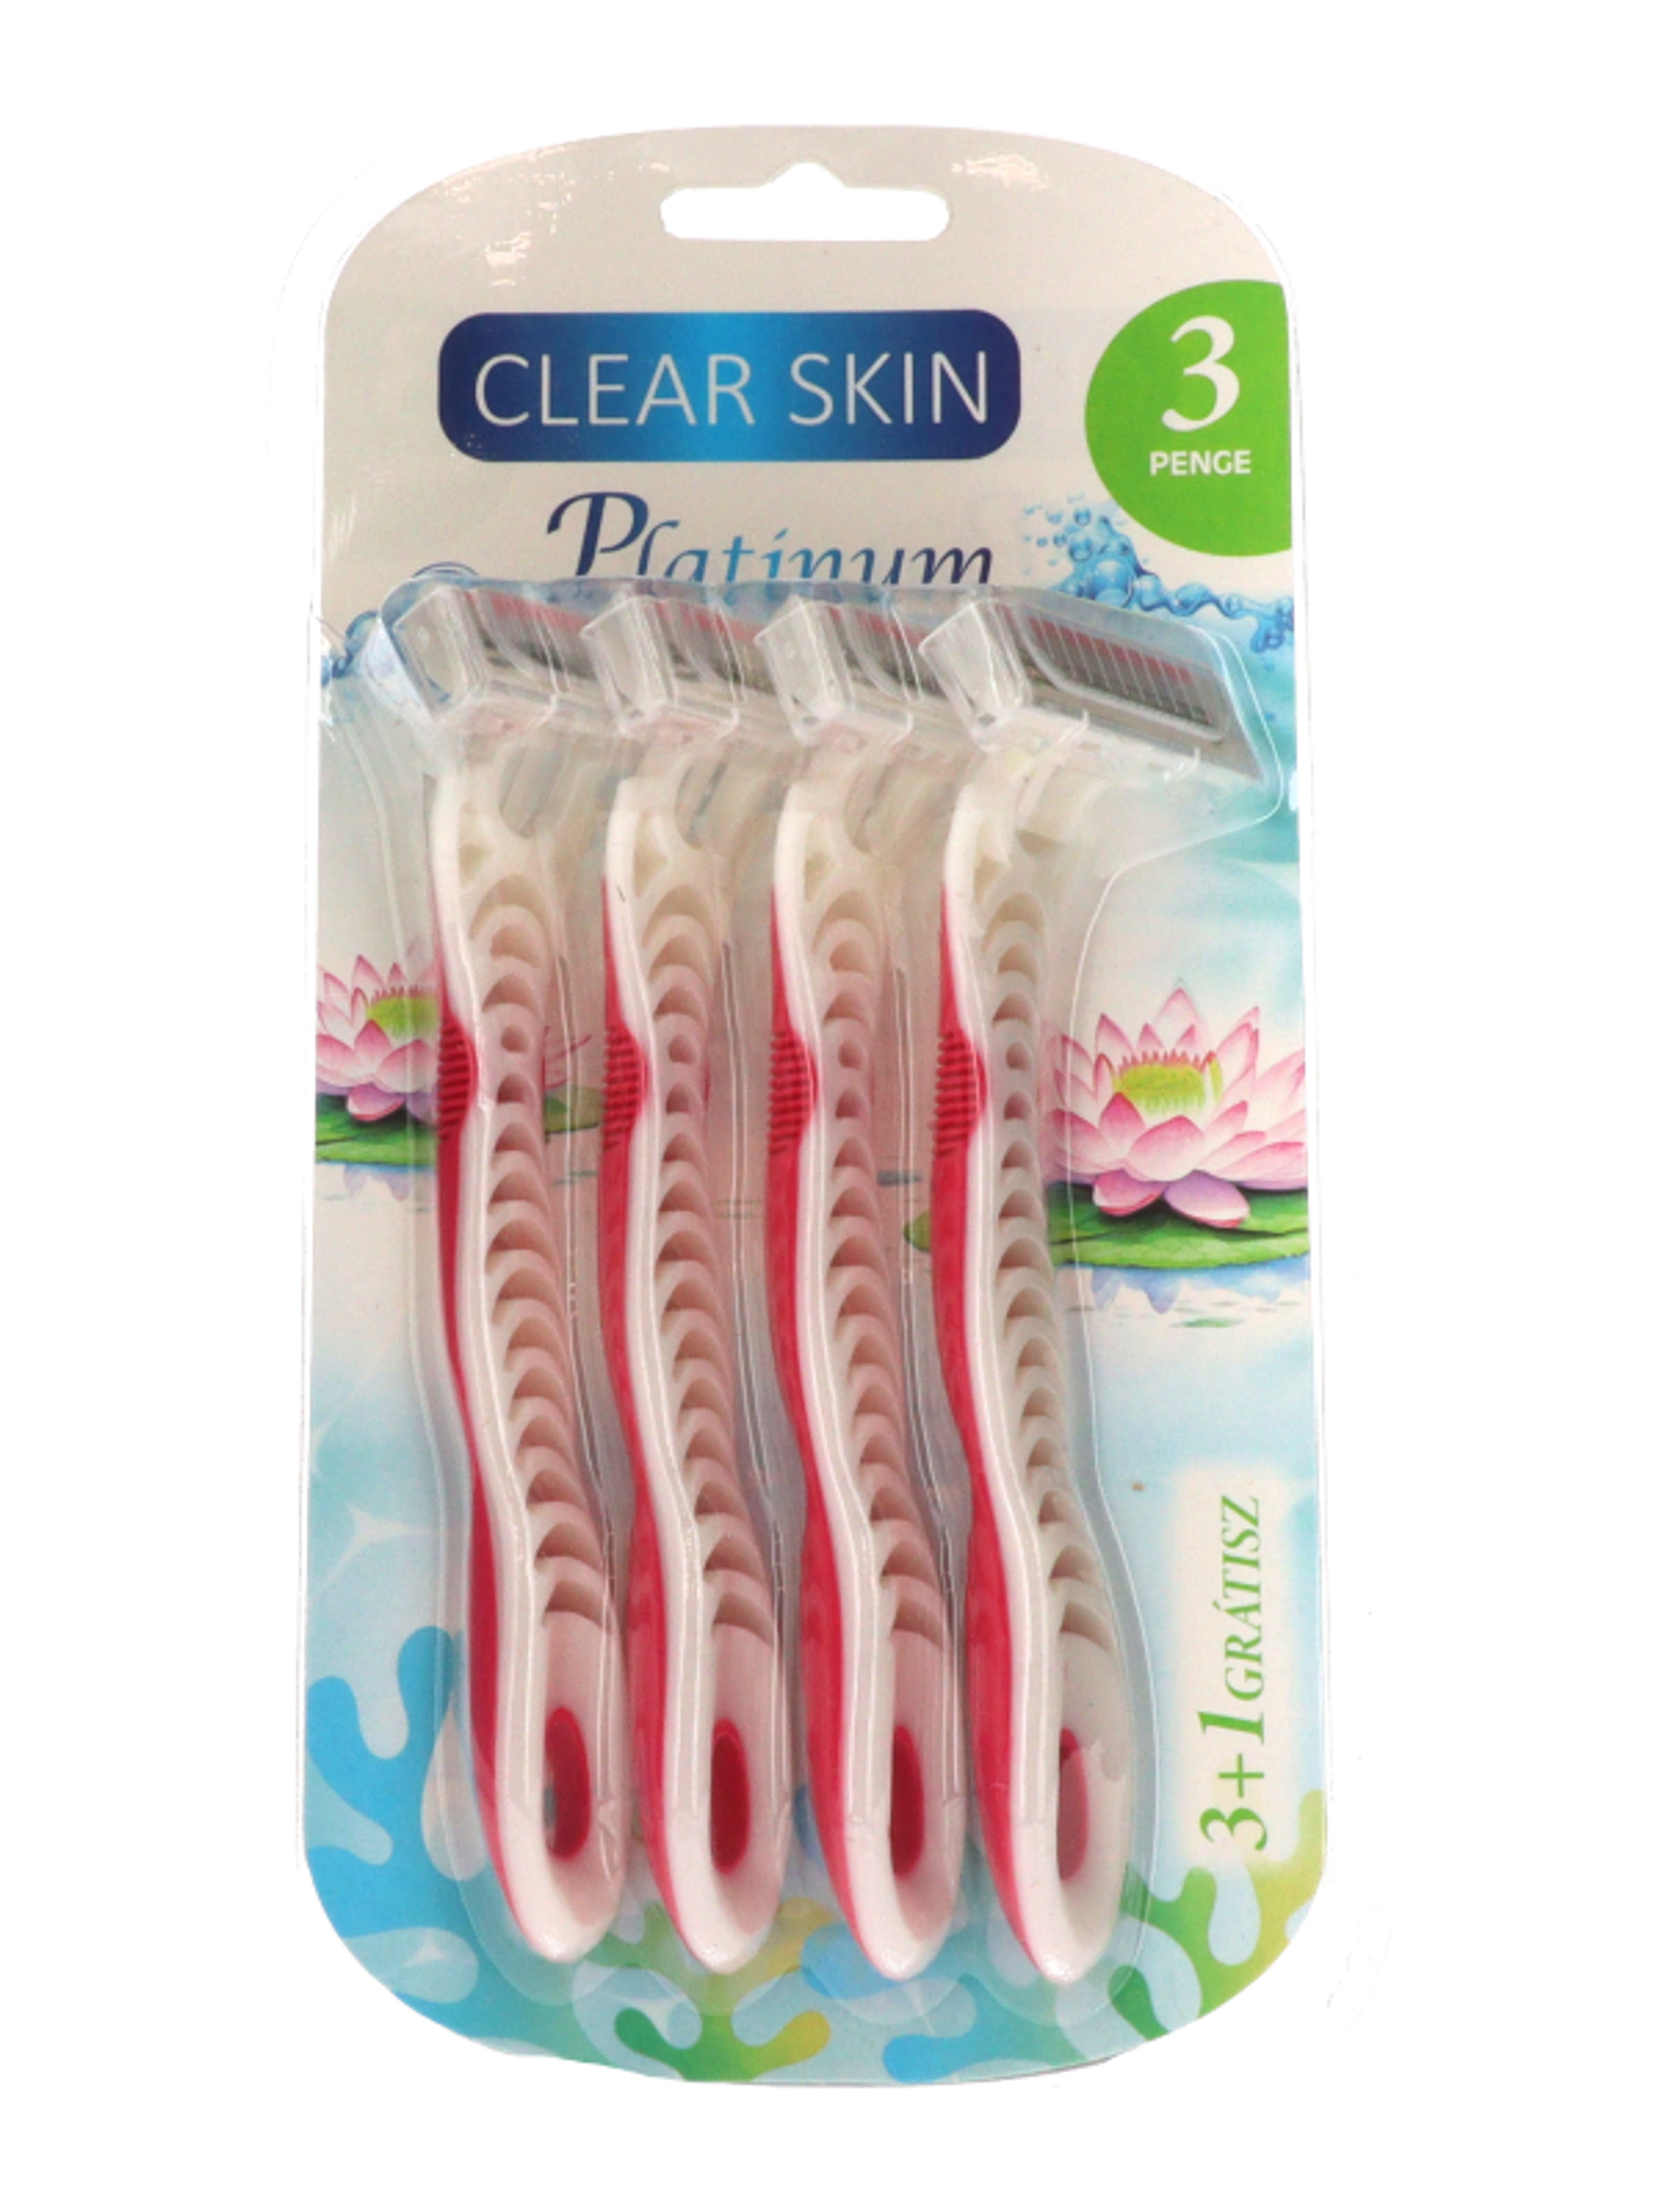 Clear Skin eldobható női borotva 3 pengés - 4 db